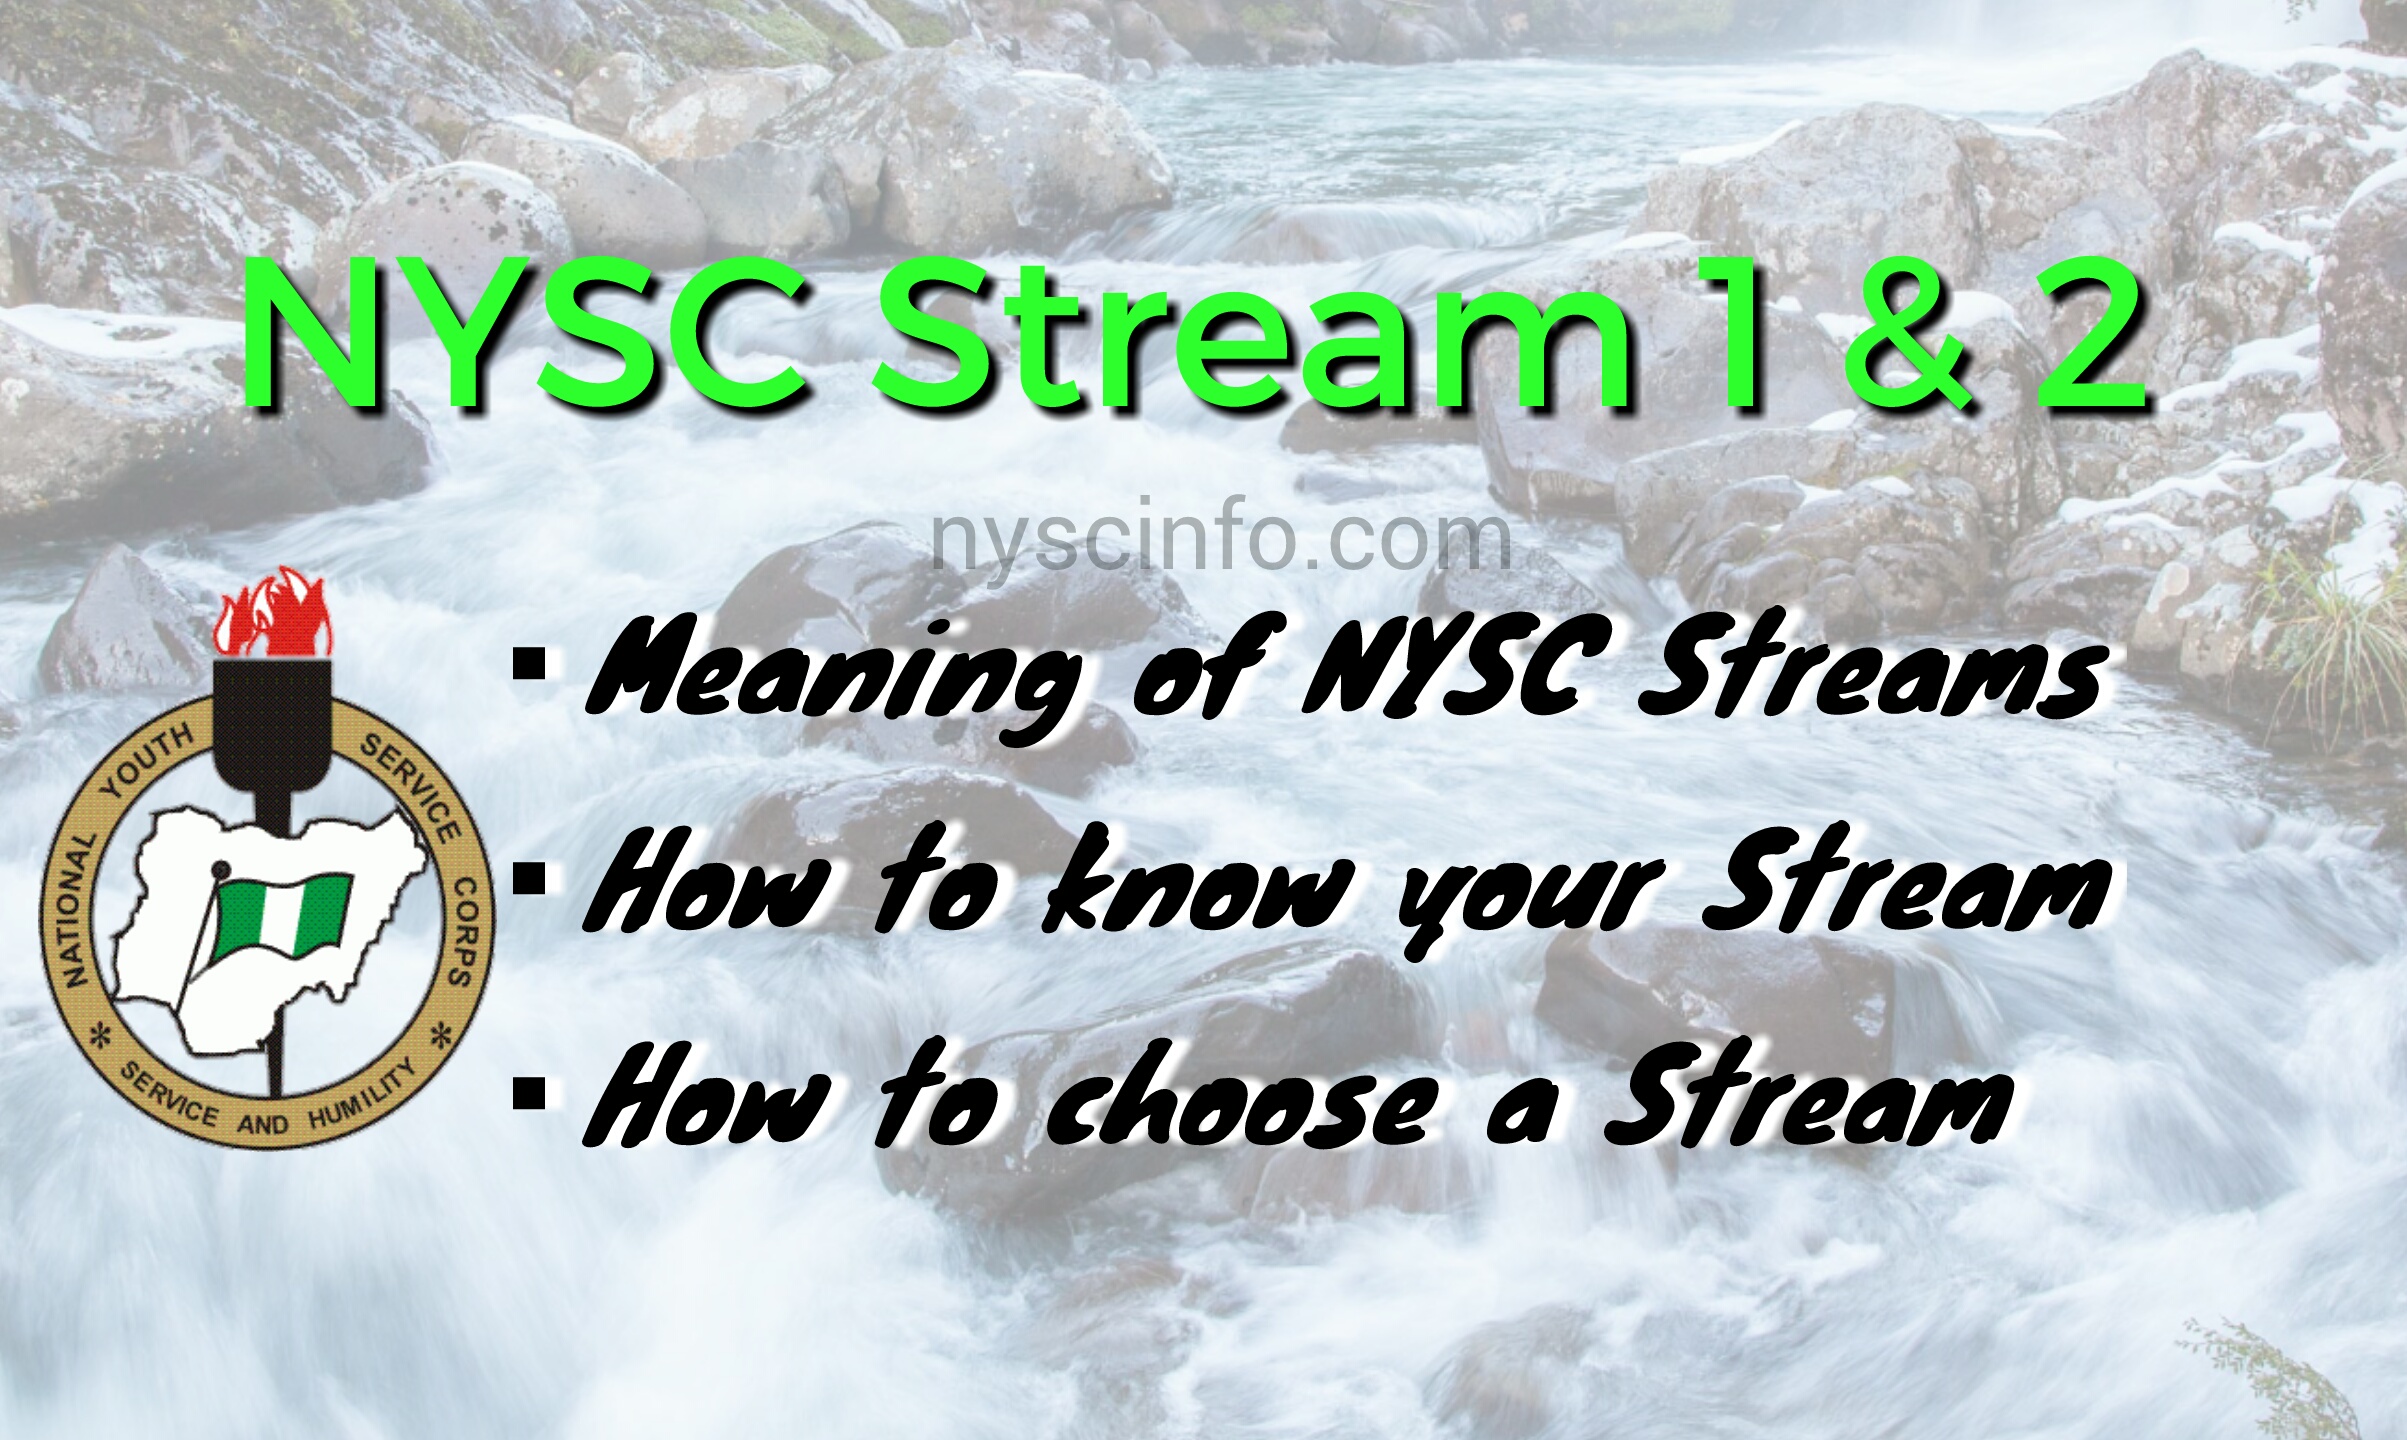 Nysc streams